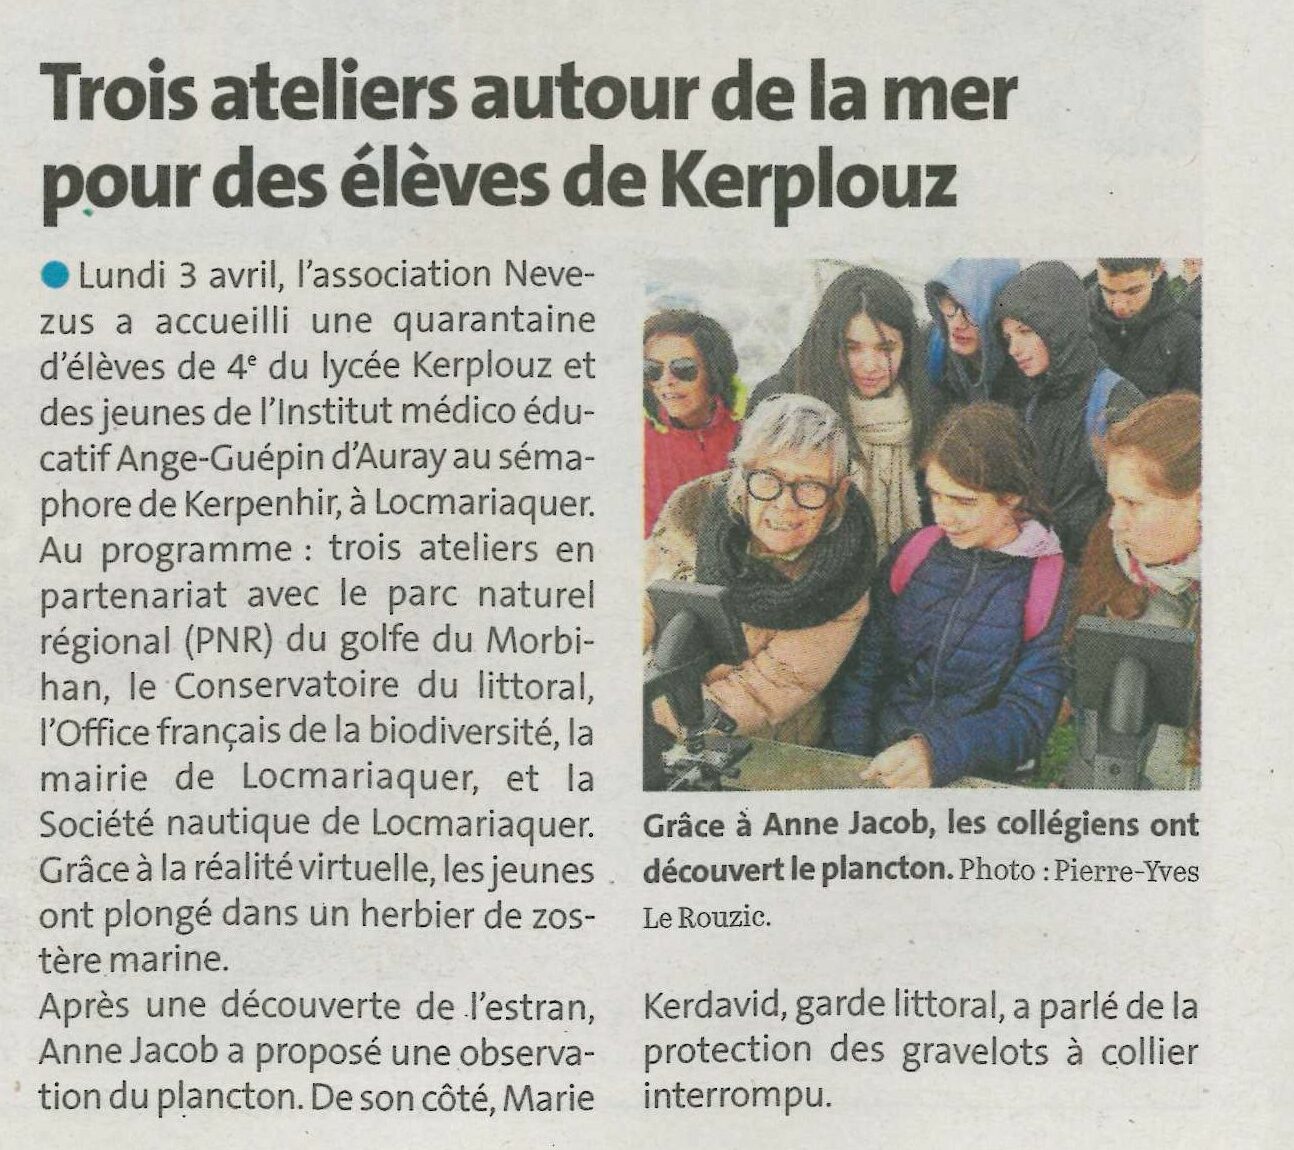 Trois ateliers autour de la mer pour des élèves de Kerplouz